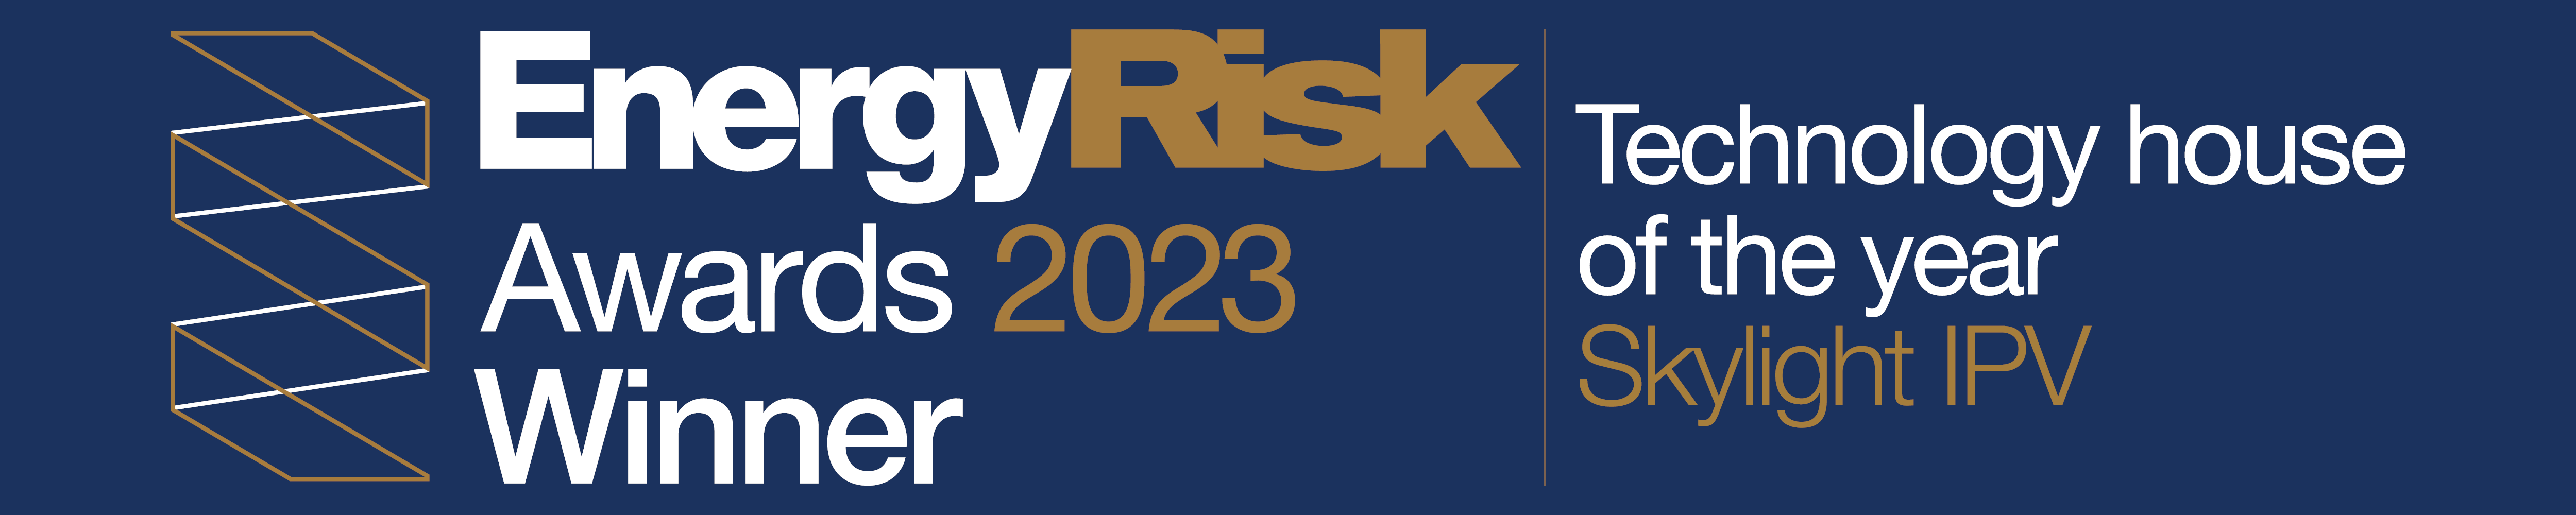 Energy Risk Awards Winner 2023